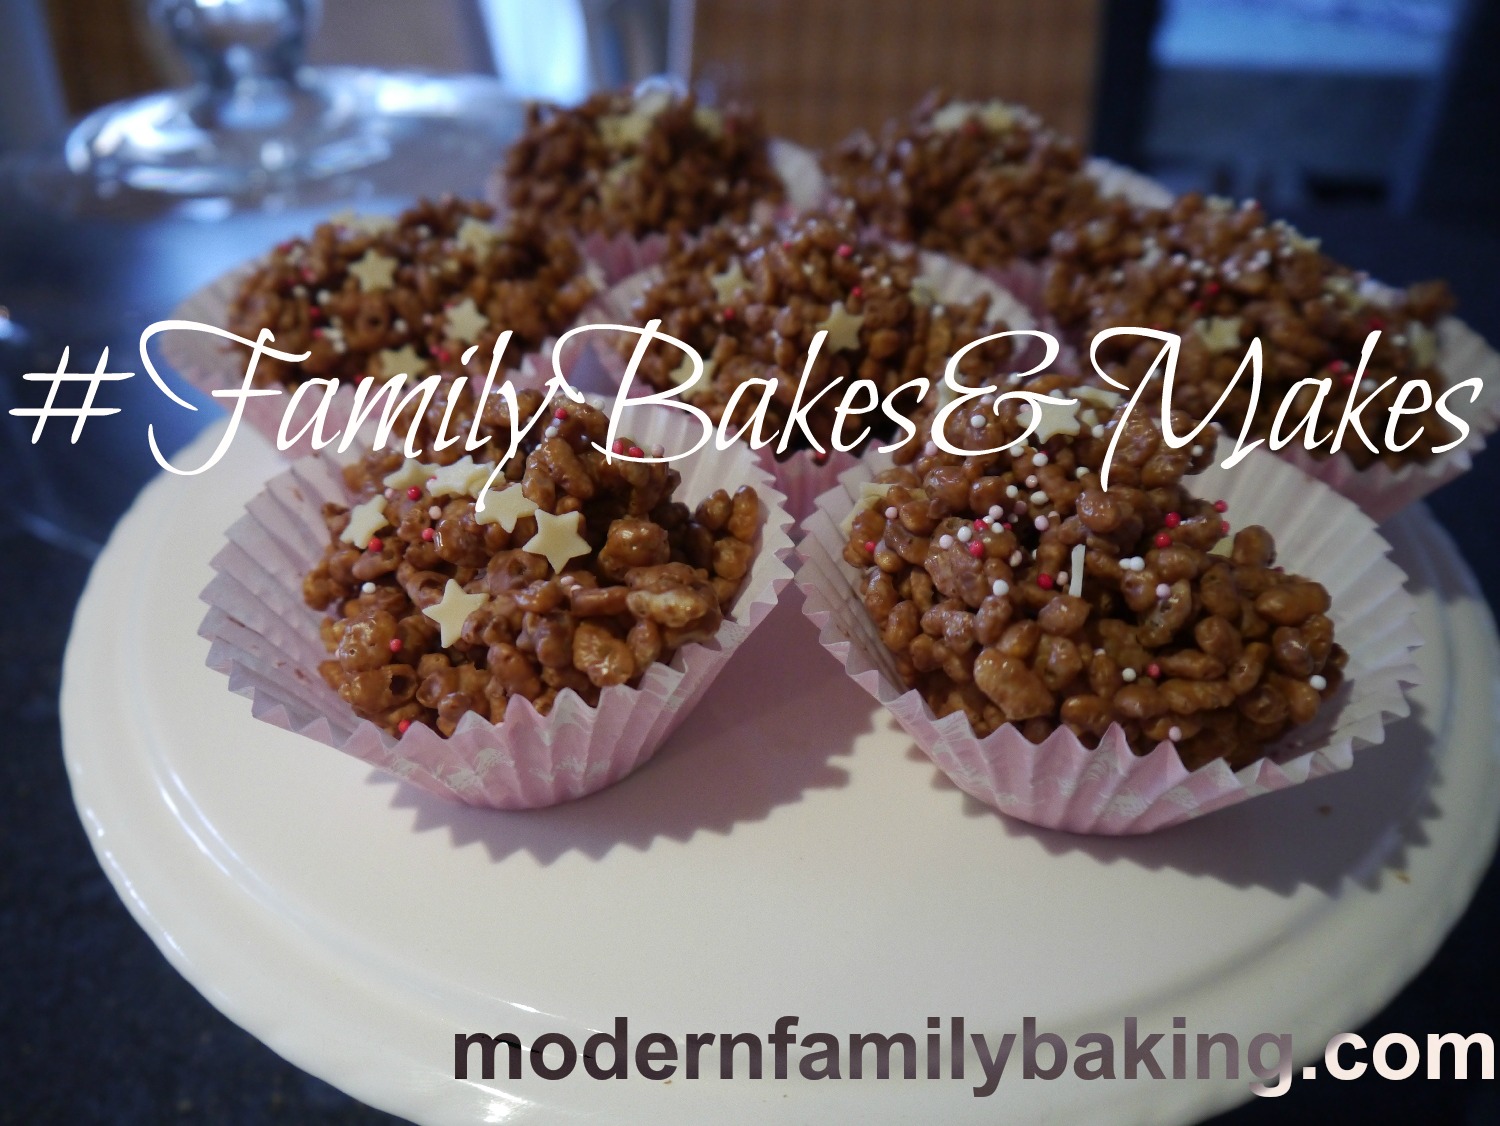 Modern Family Baking